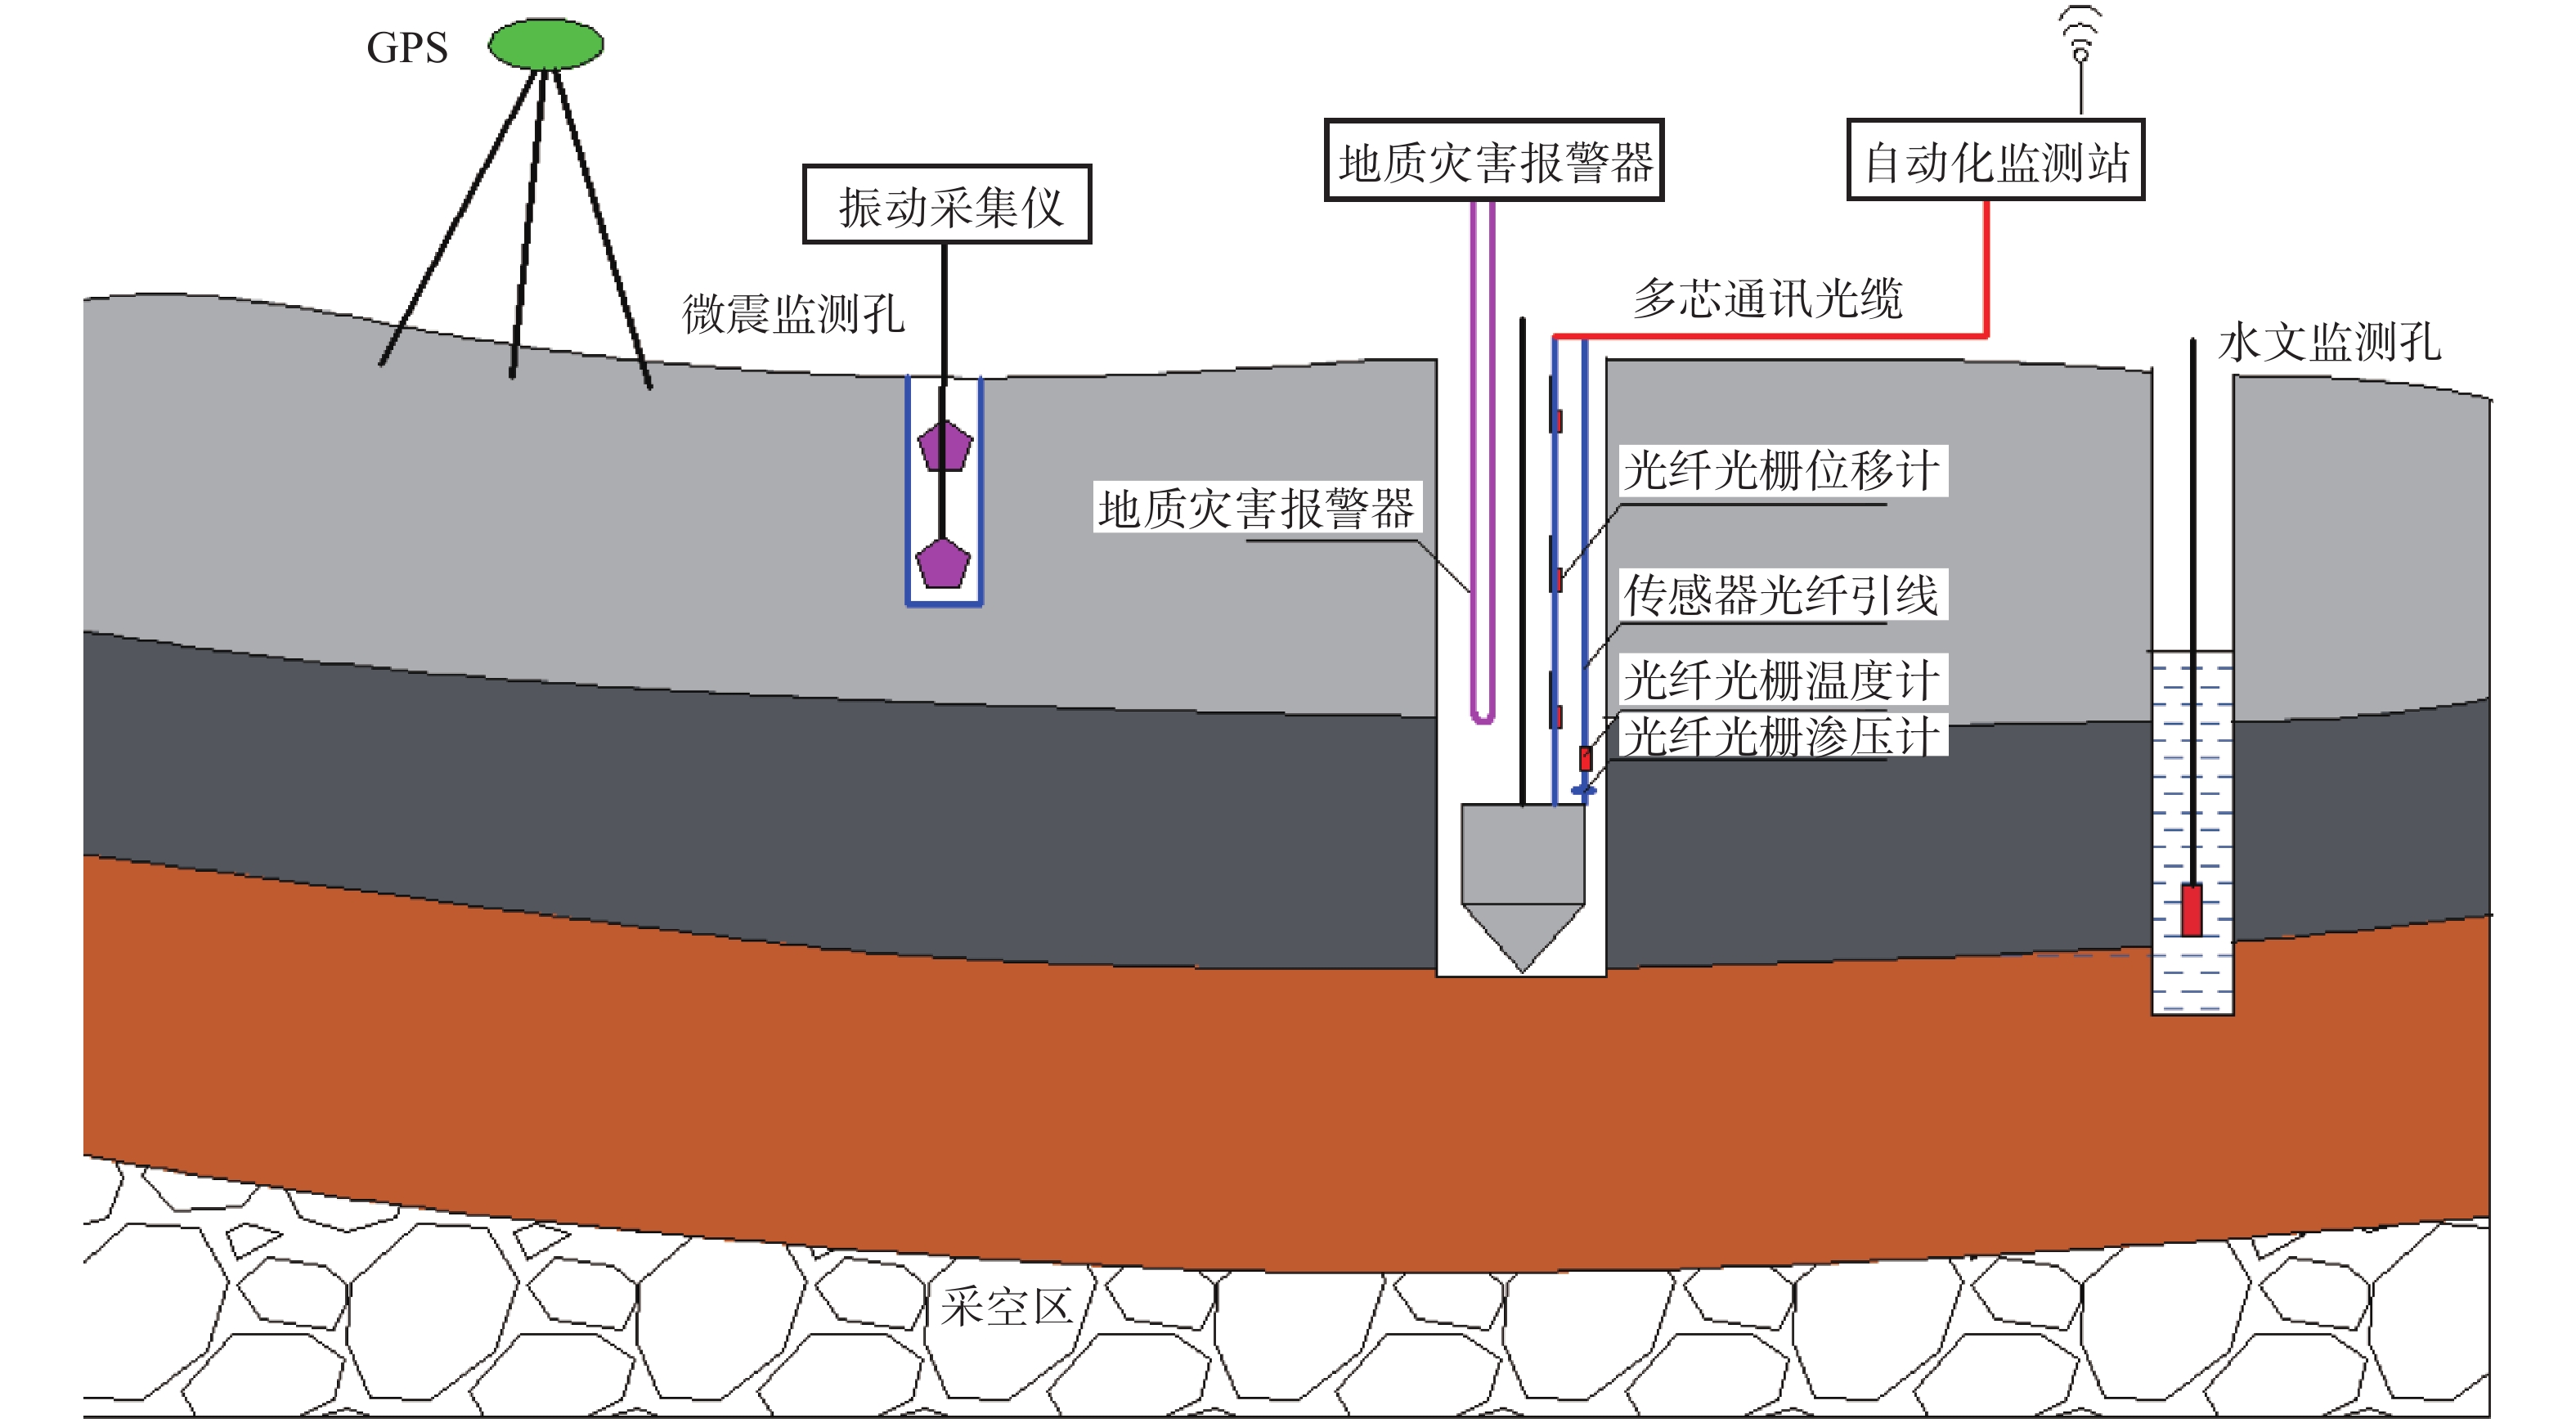 综合勘察方法在蒙华铁路石膏矿采空区选线勘察中的应用